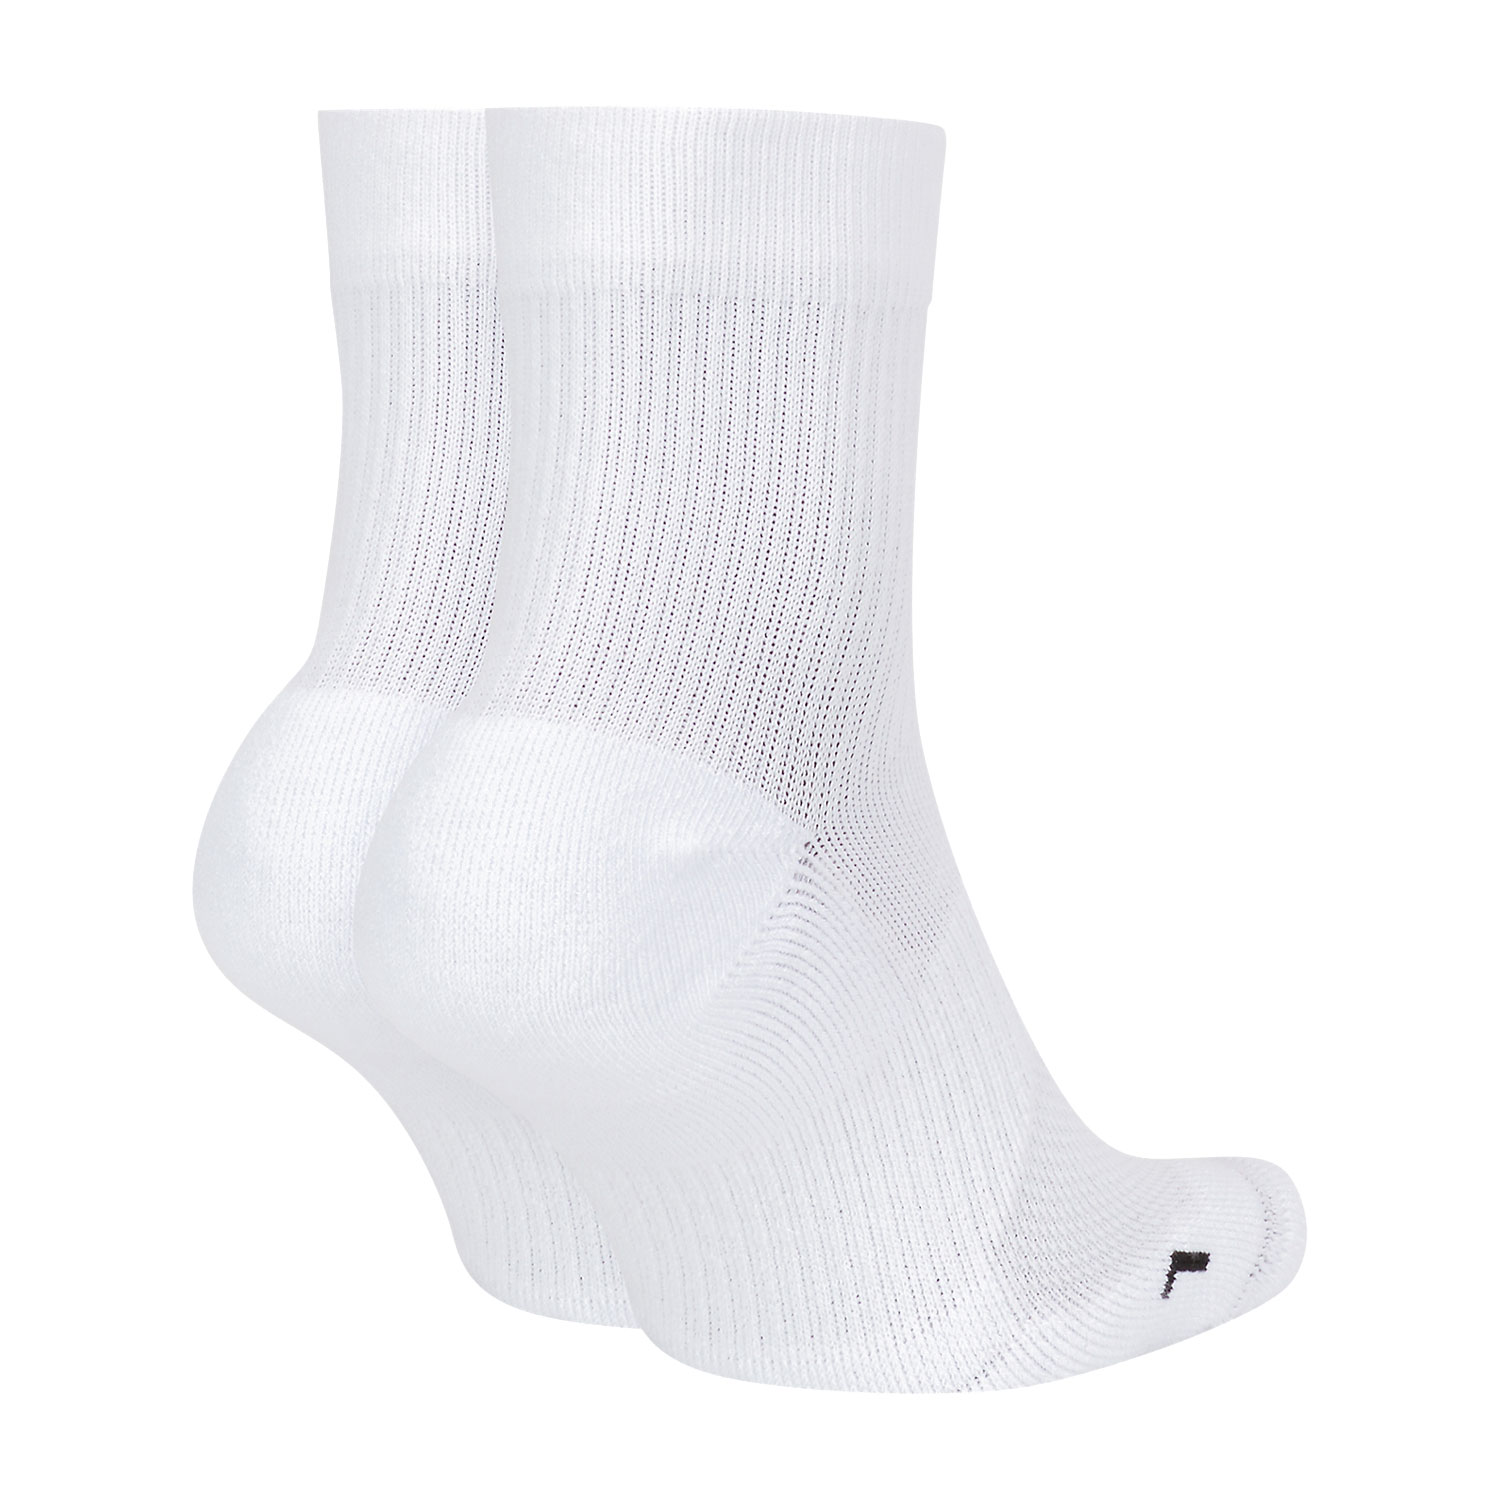 Nike Multiplier Max x 2 Tennis Socks - White